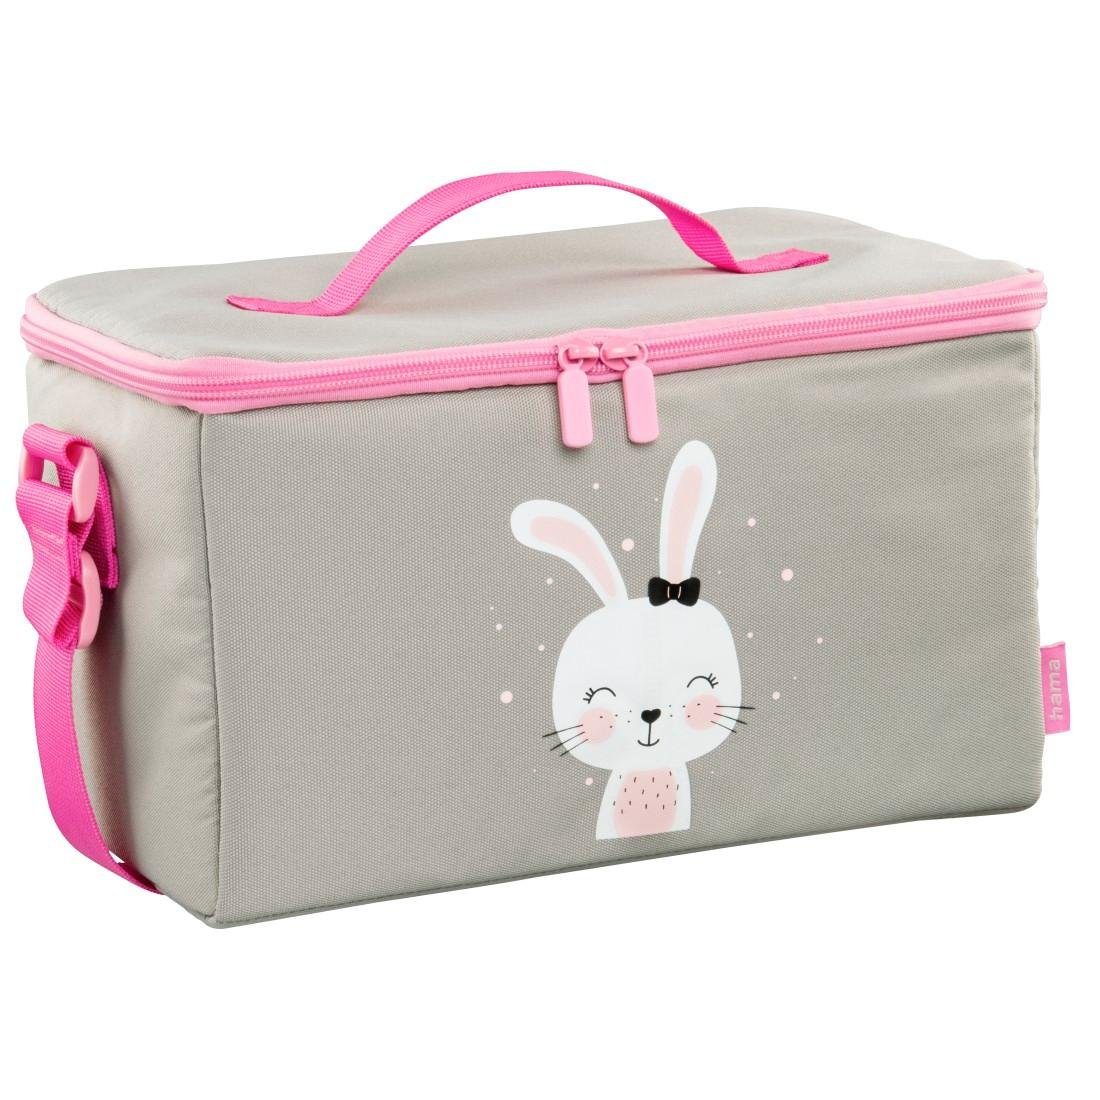 Hama Tragetasche Tasche für Toniebox®, Tonies® und Zubehör "Lovely Bunny", Toniebox, Tigerbox pink